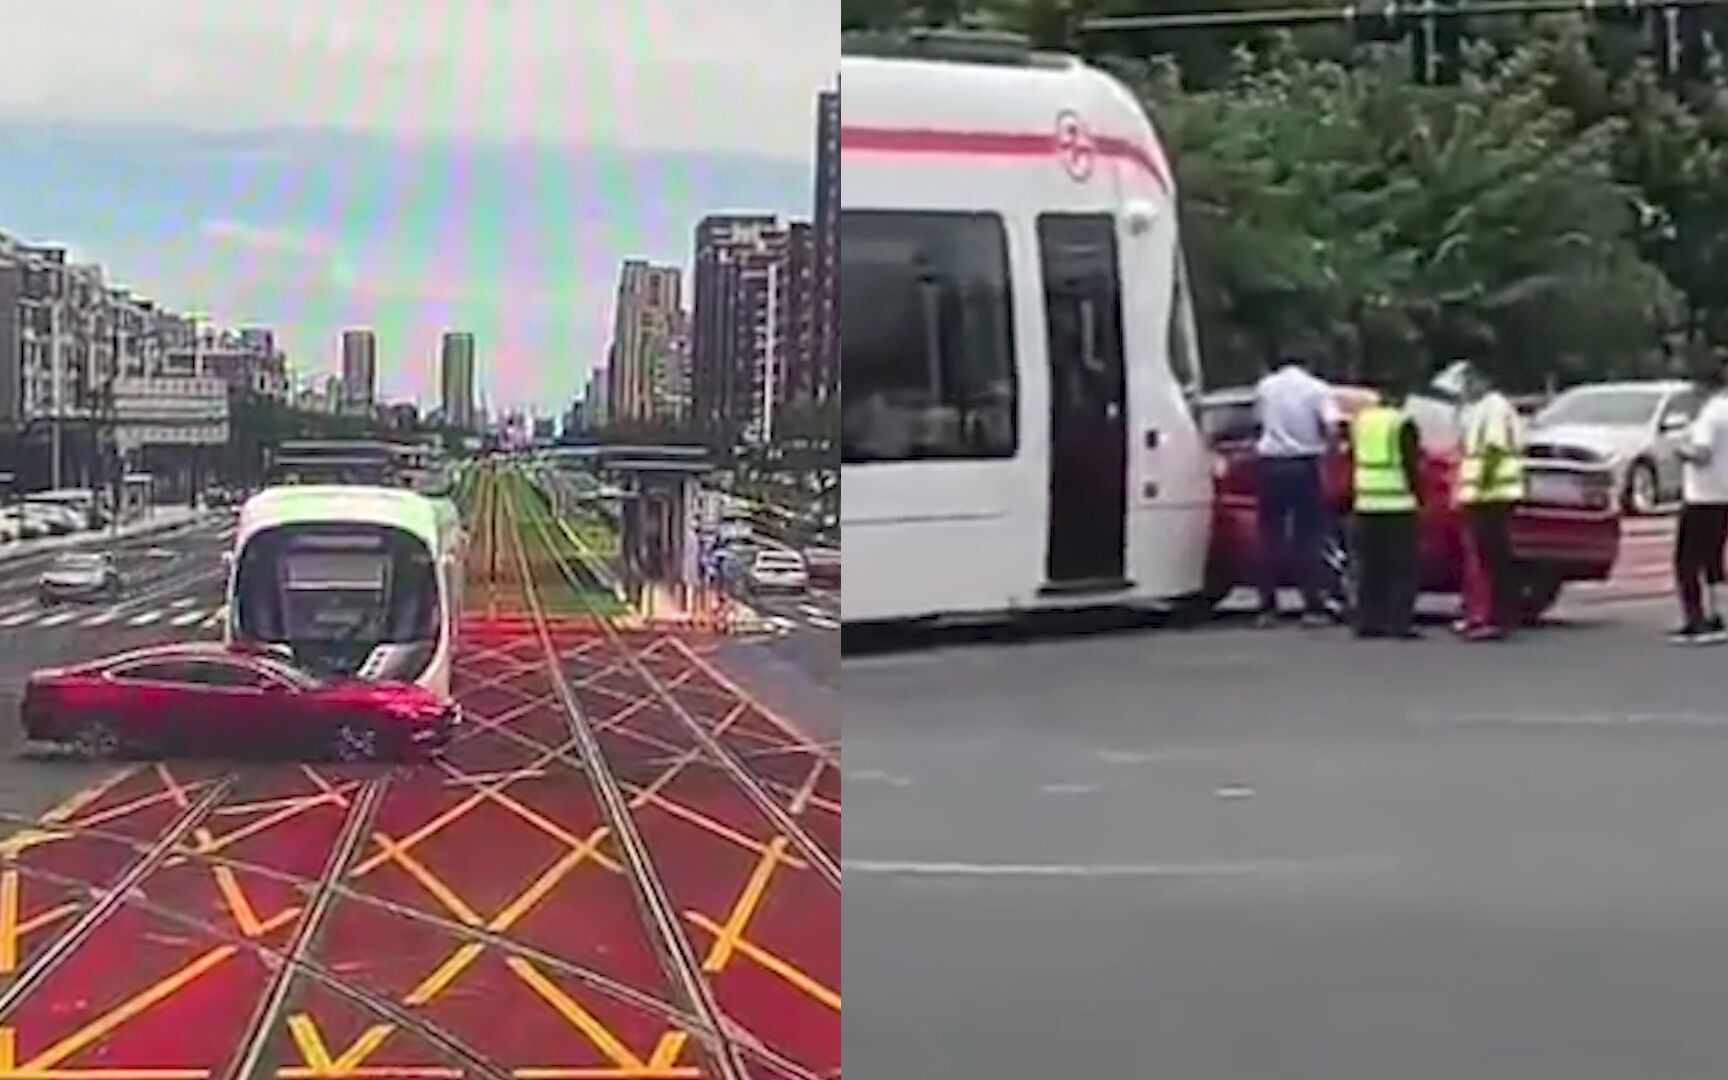 红色轿车转弯时与有轨电车相撞 轿车一侧瞬间被撞扁 监控现场曝光